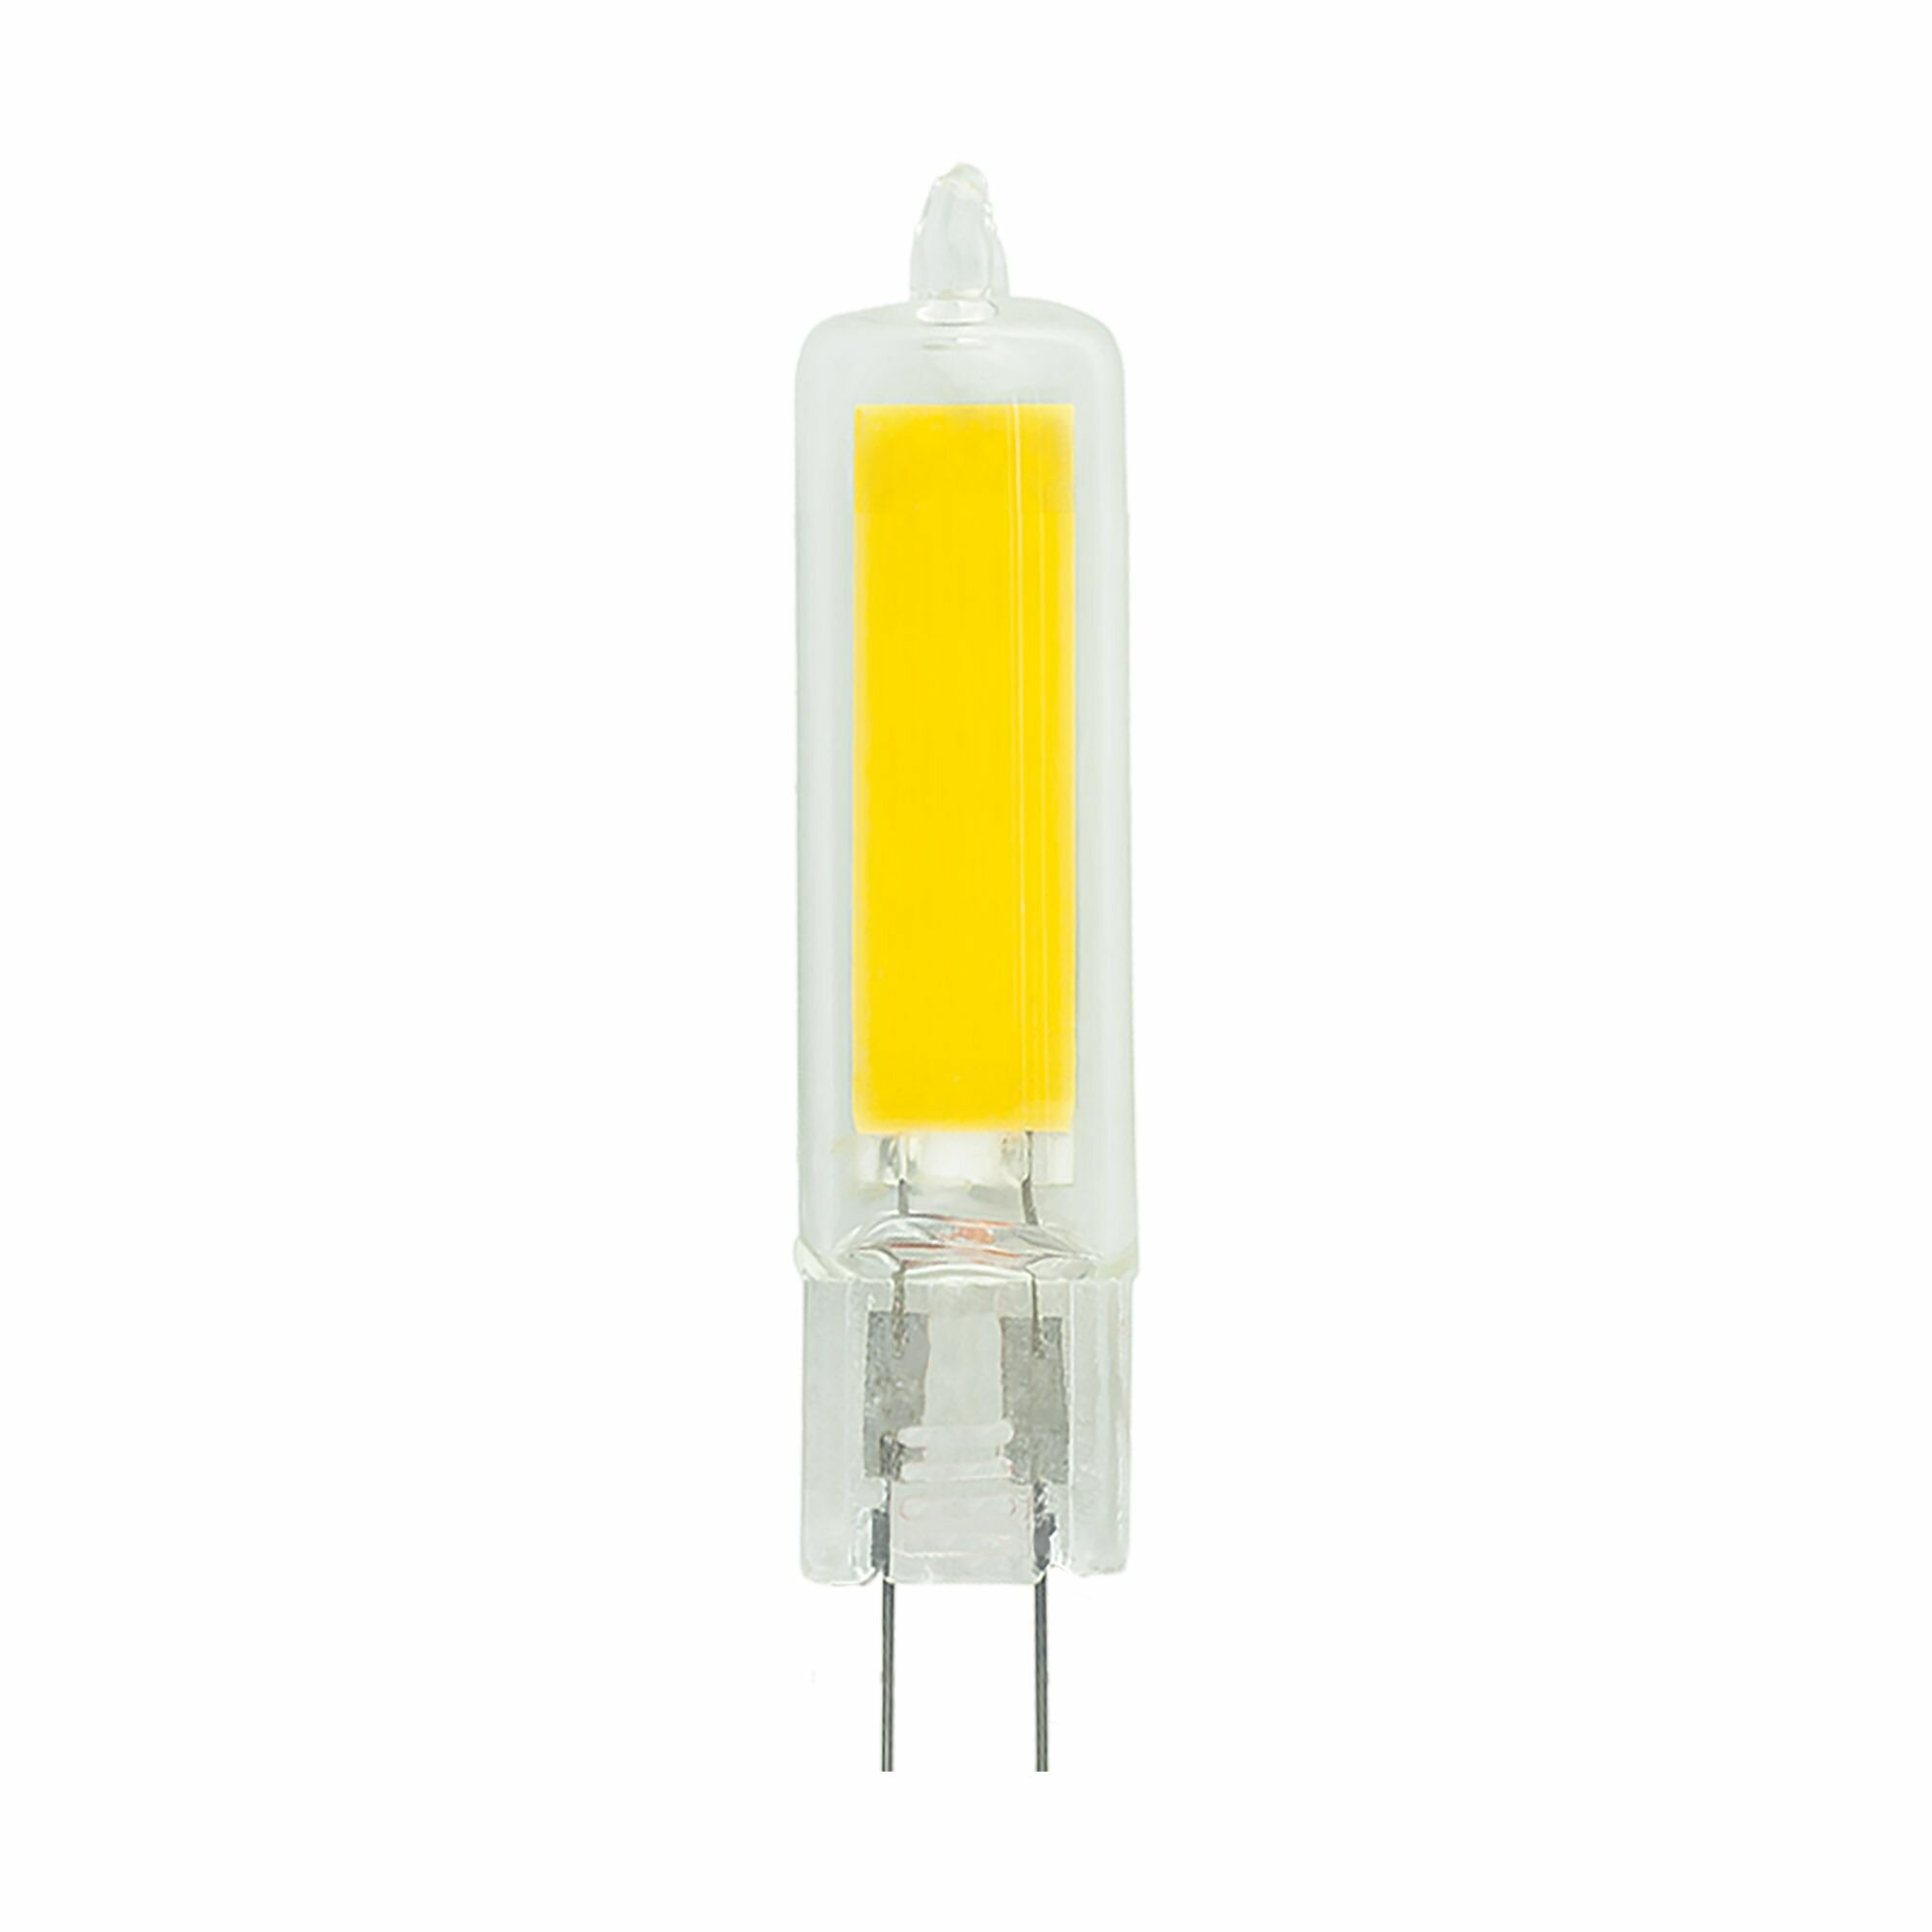 Лампочка Thomson TH-B4202, 6 Вт, G4, 4000K, капсула, нейтральный белый свет